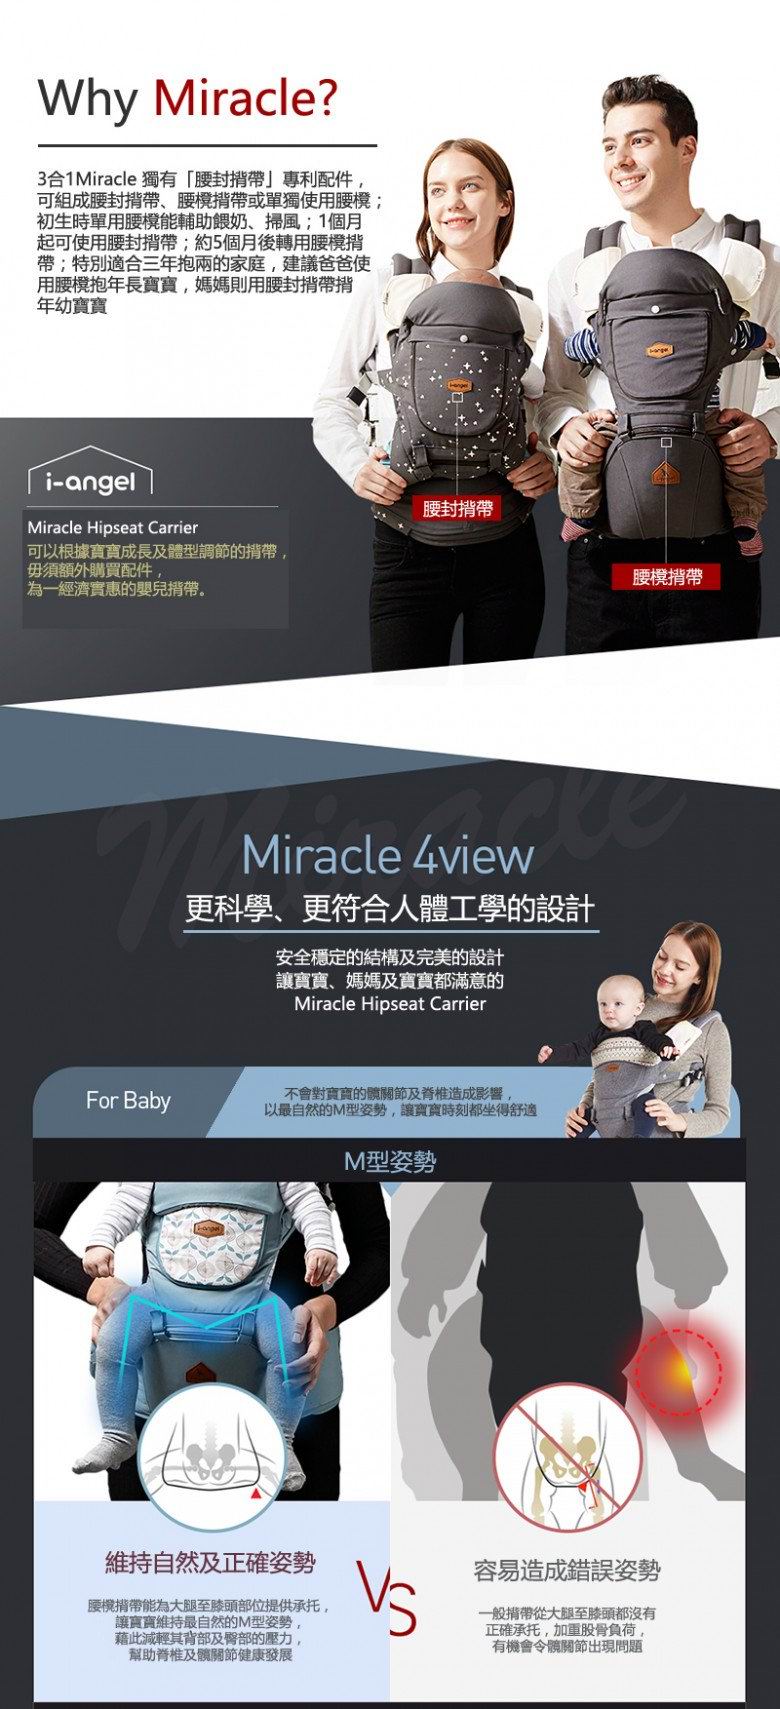 韓國 i-angel 4合1 New Miracle 四季型腰櫈揹帶 [防水外層]